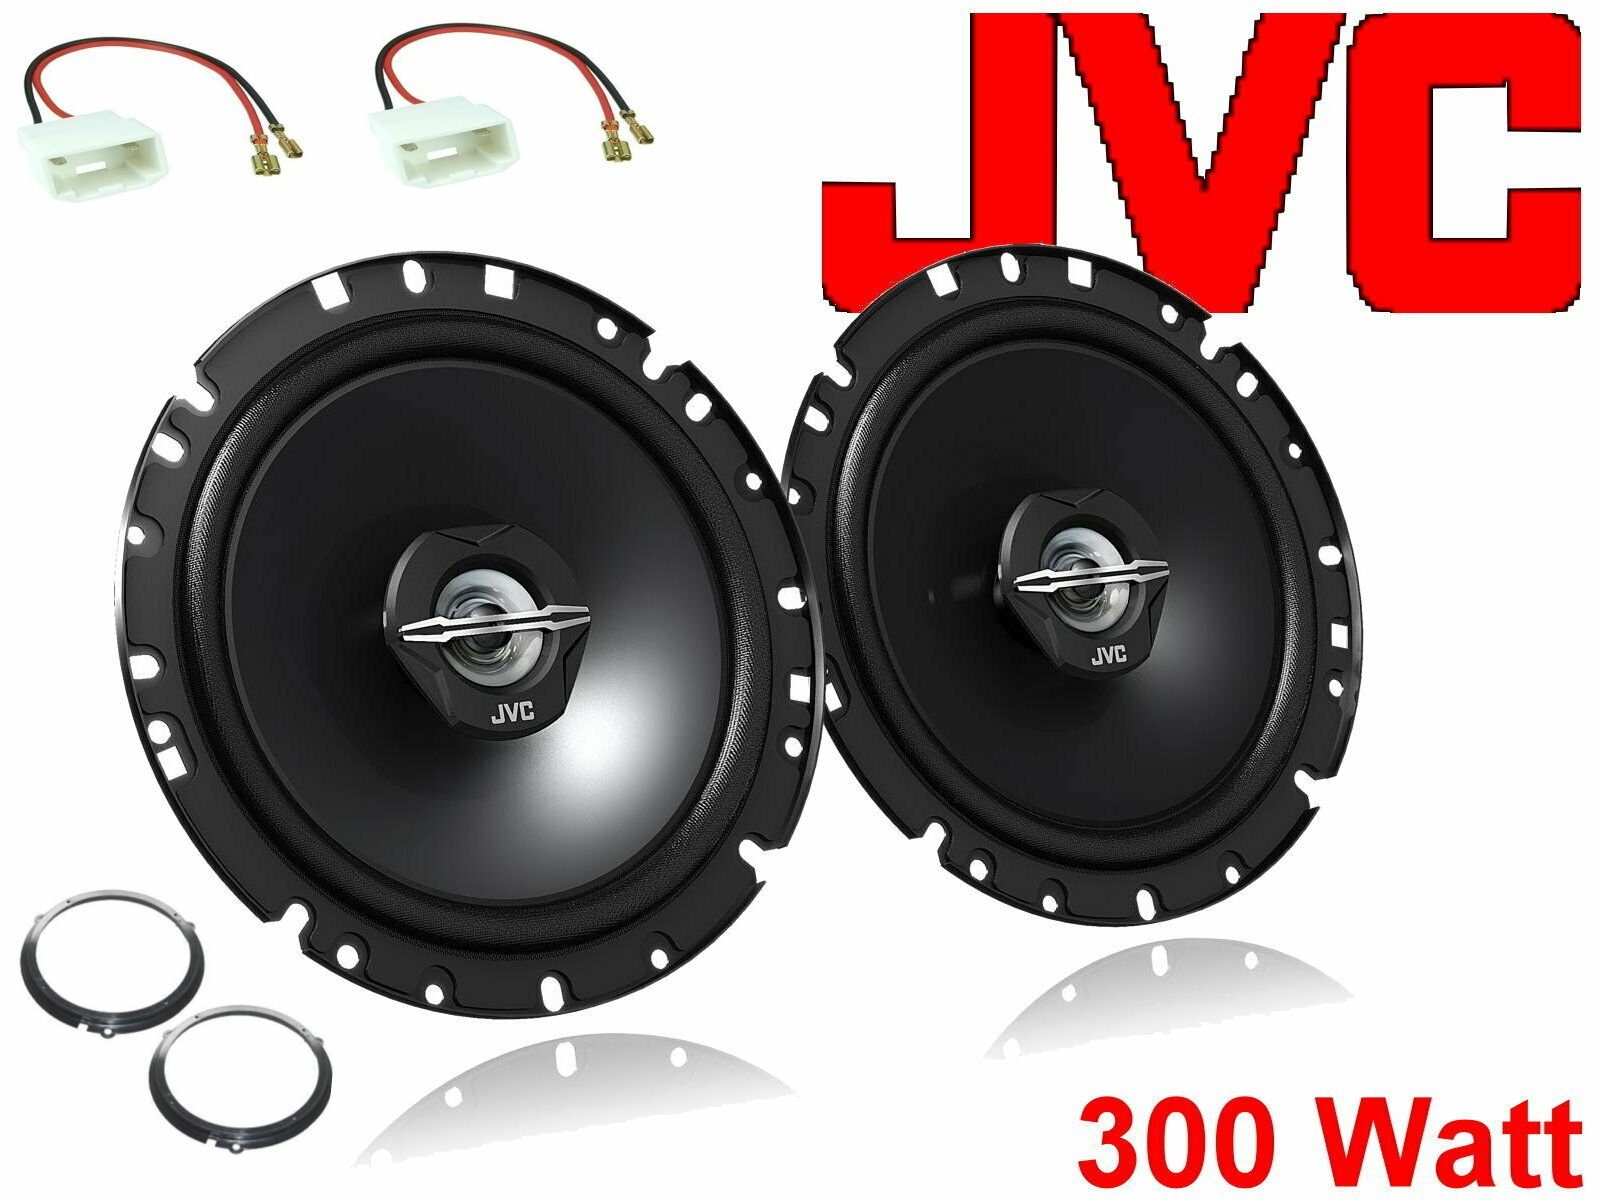 DSX JVC passend für Ford Fiesta JA8 Bj 08/08-12 Lauts Auto-Lautsprecher (30 W)